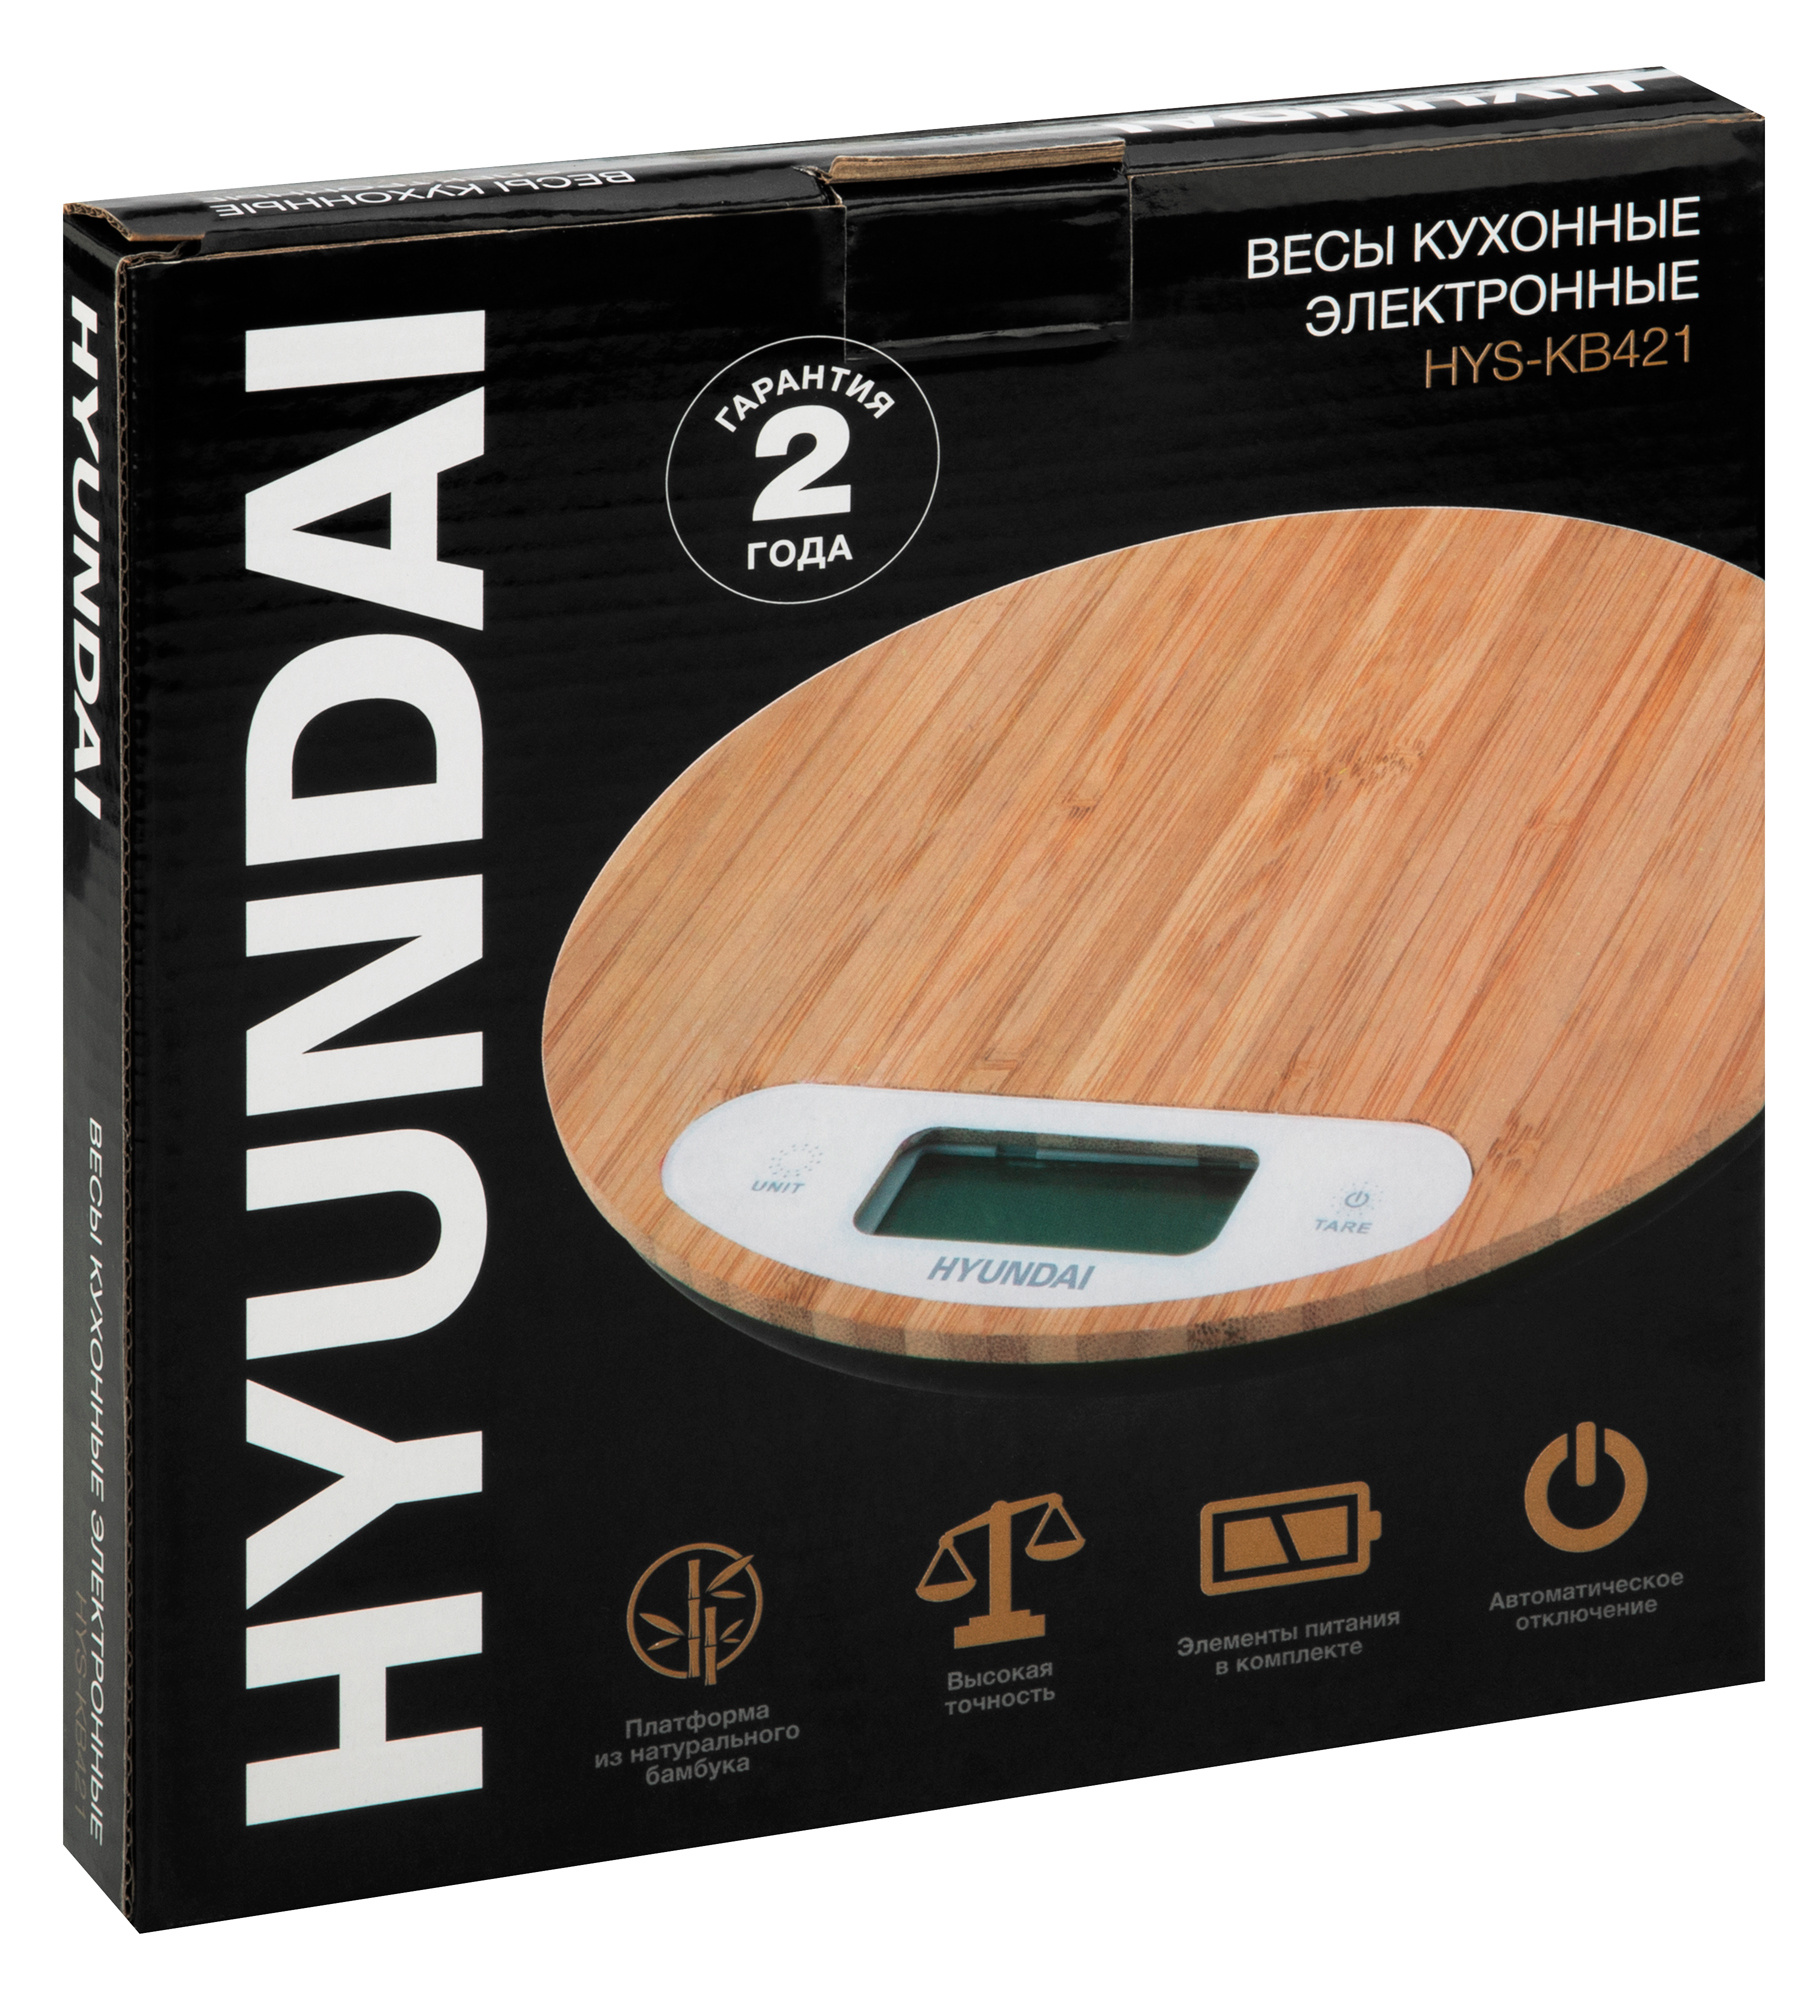 Весы кухонные электронные Hyundai HYS-KB421 макс.вес:5кг бамбук